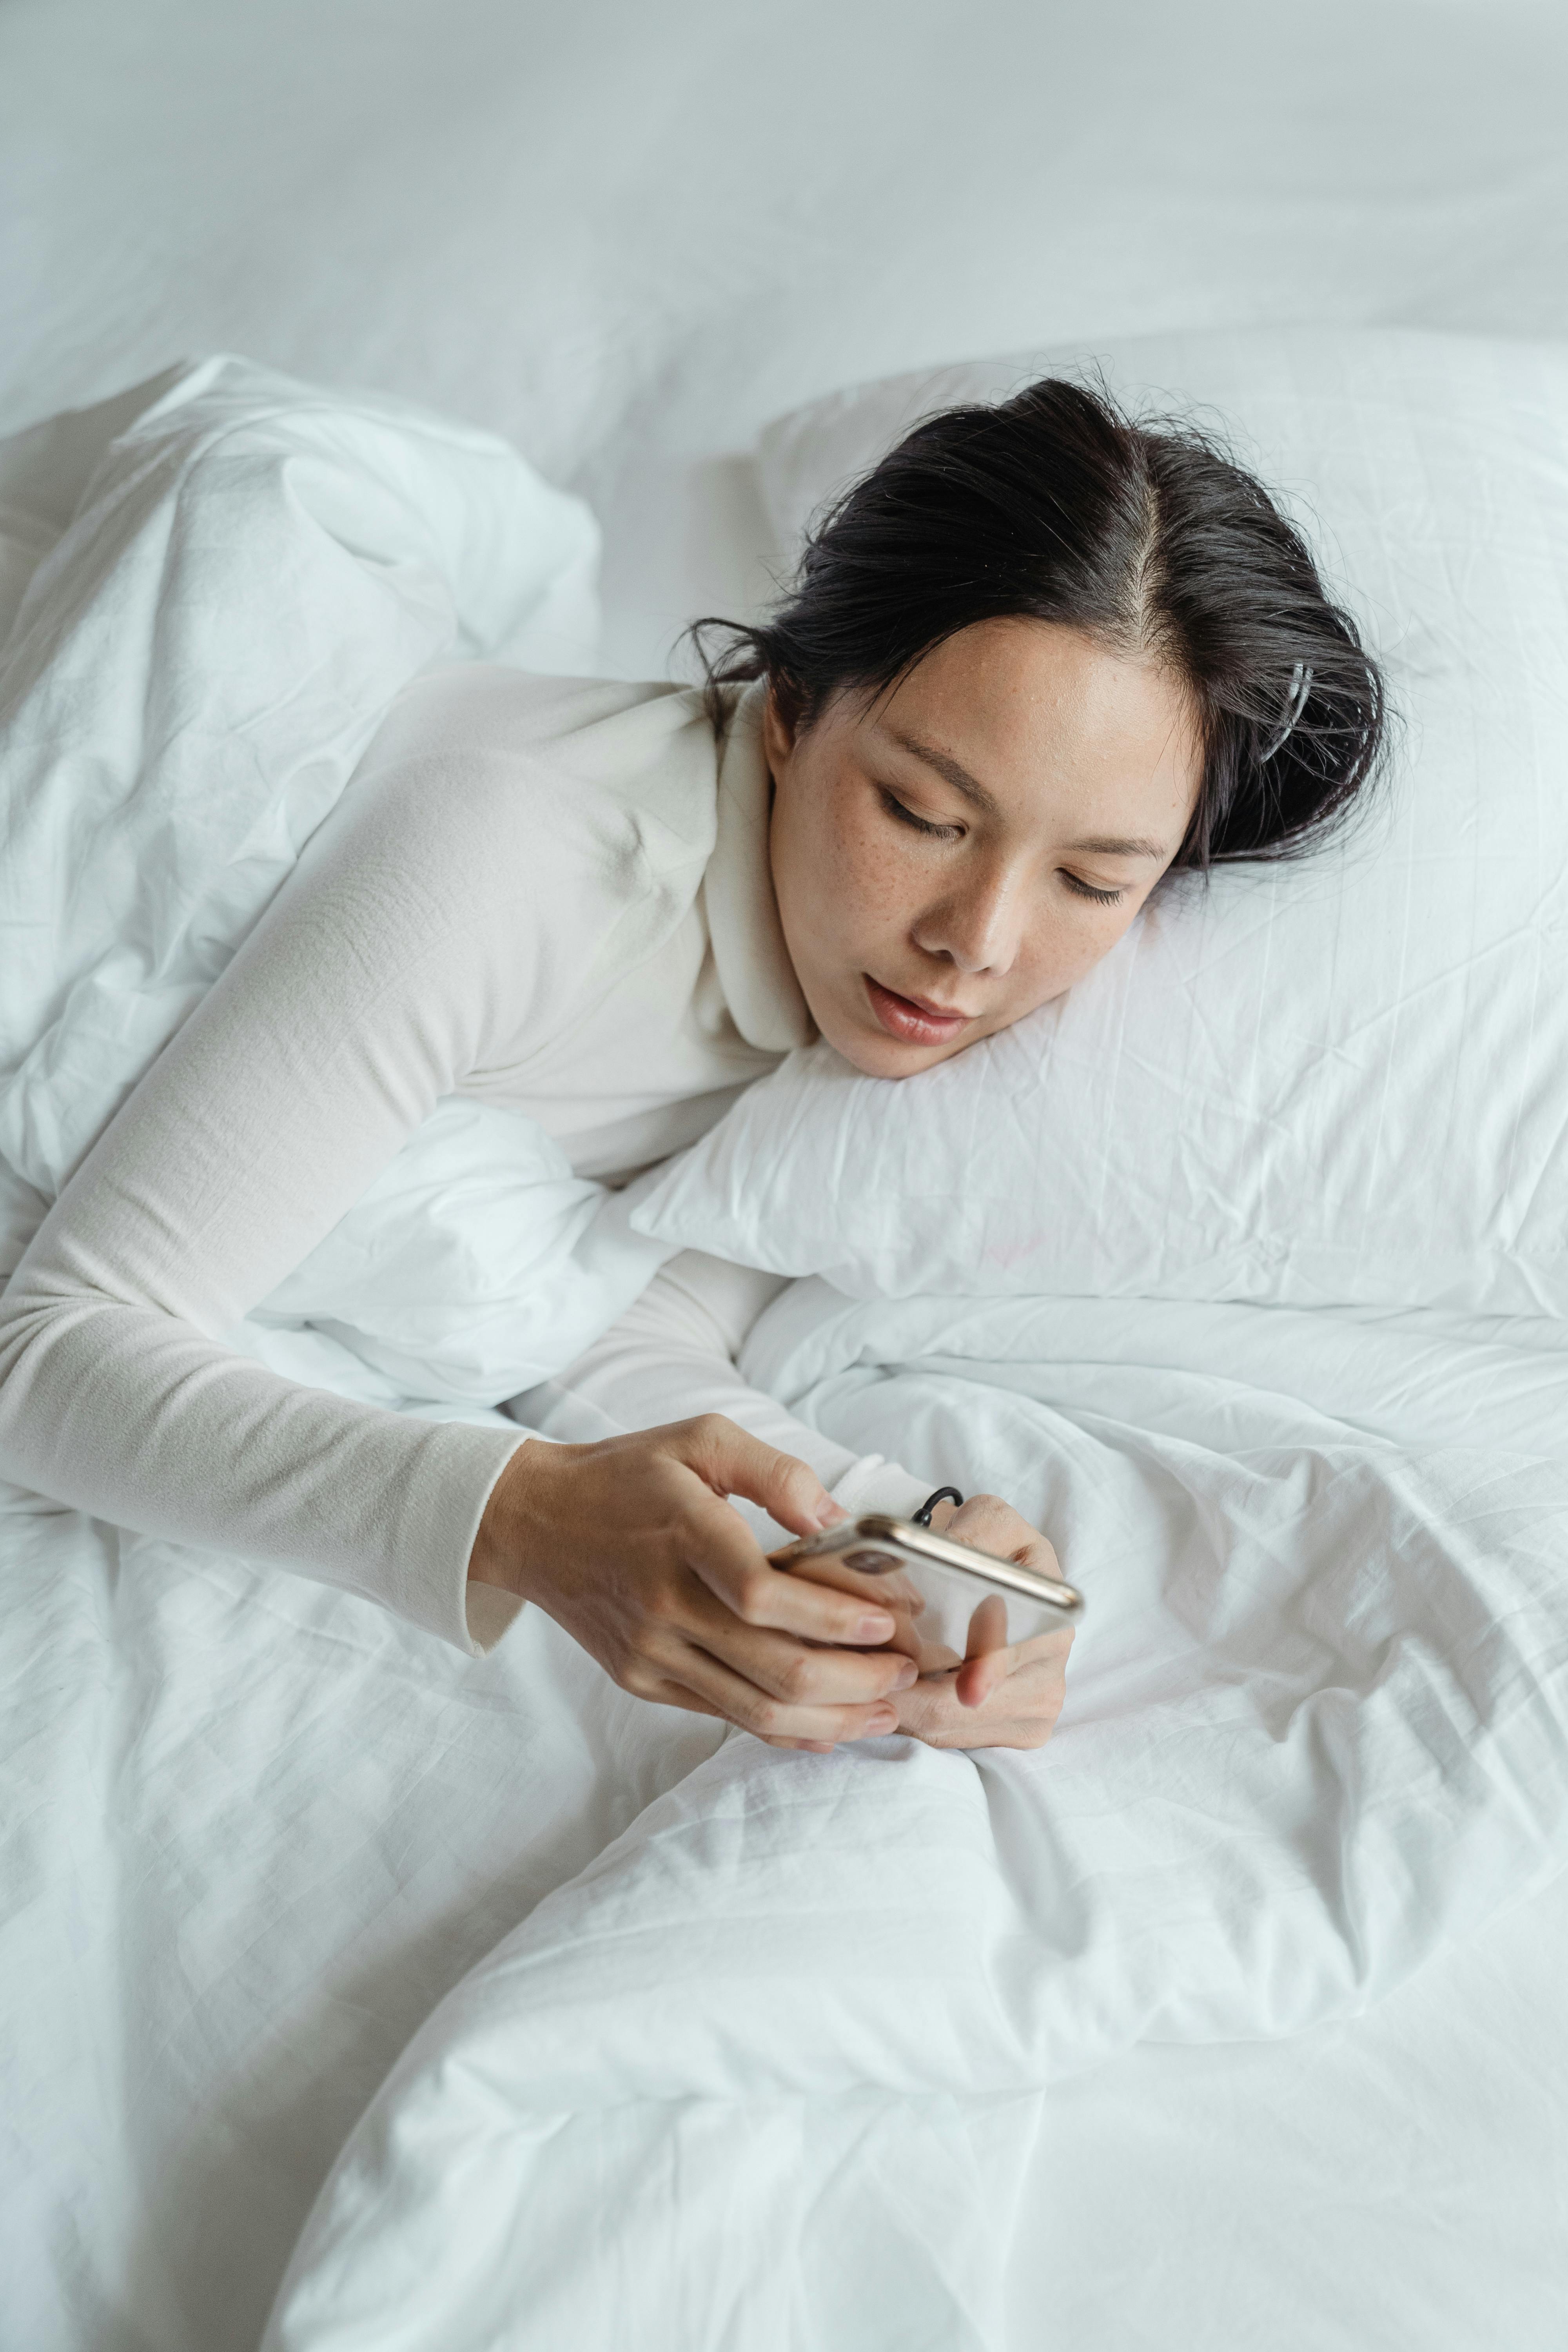 Eine Frau schreibt eine SMS auf ihrem Handy, während sie im Bett liegt | Quelle: Pexels